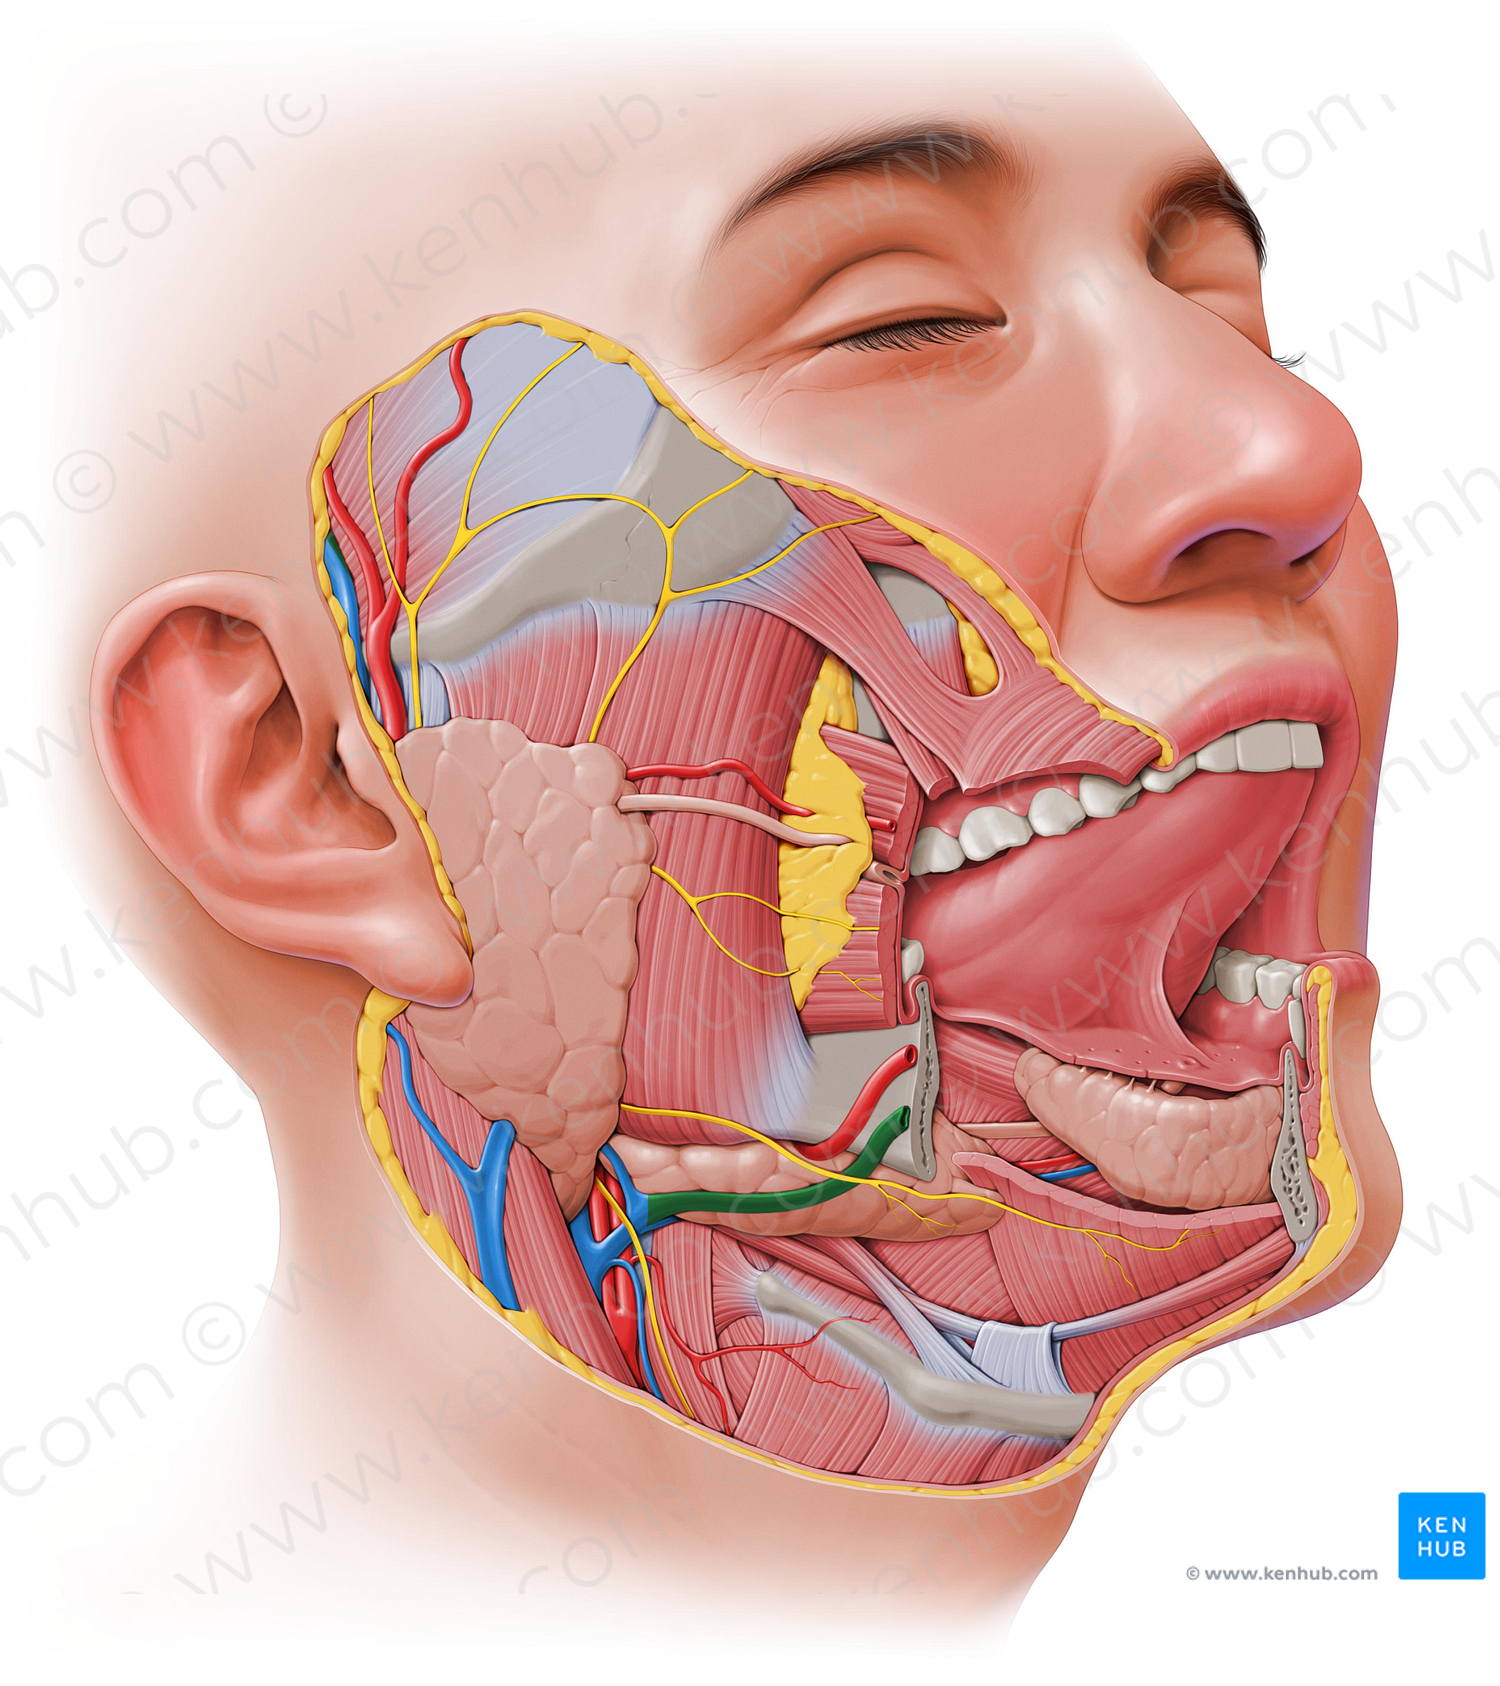 Facial vein (#10231)